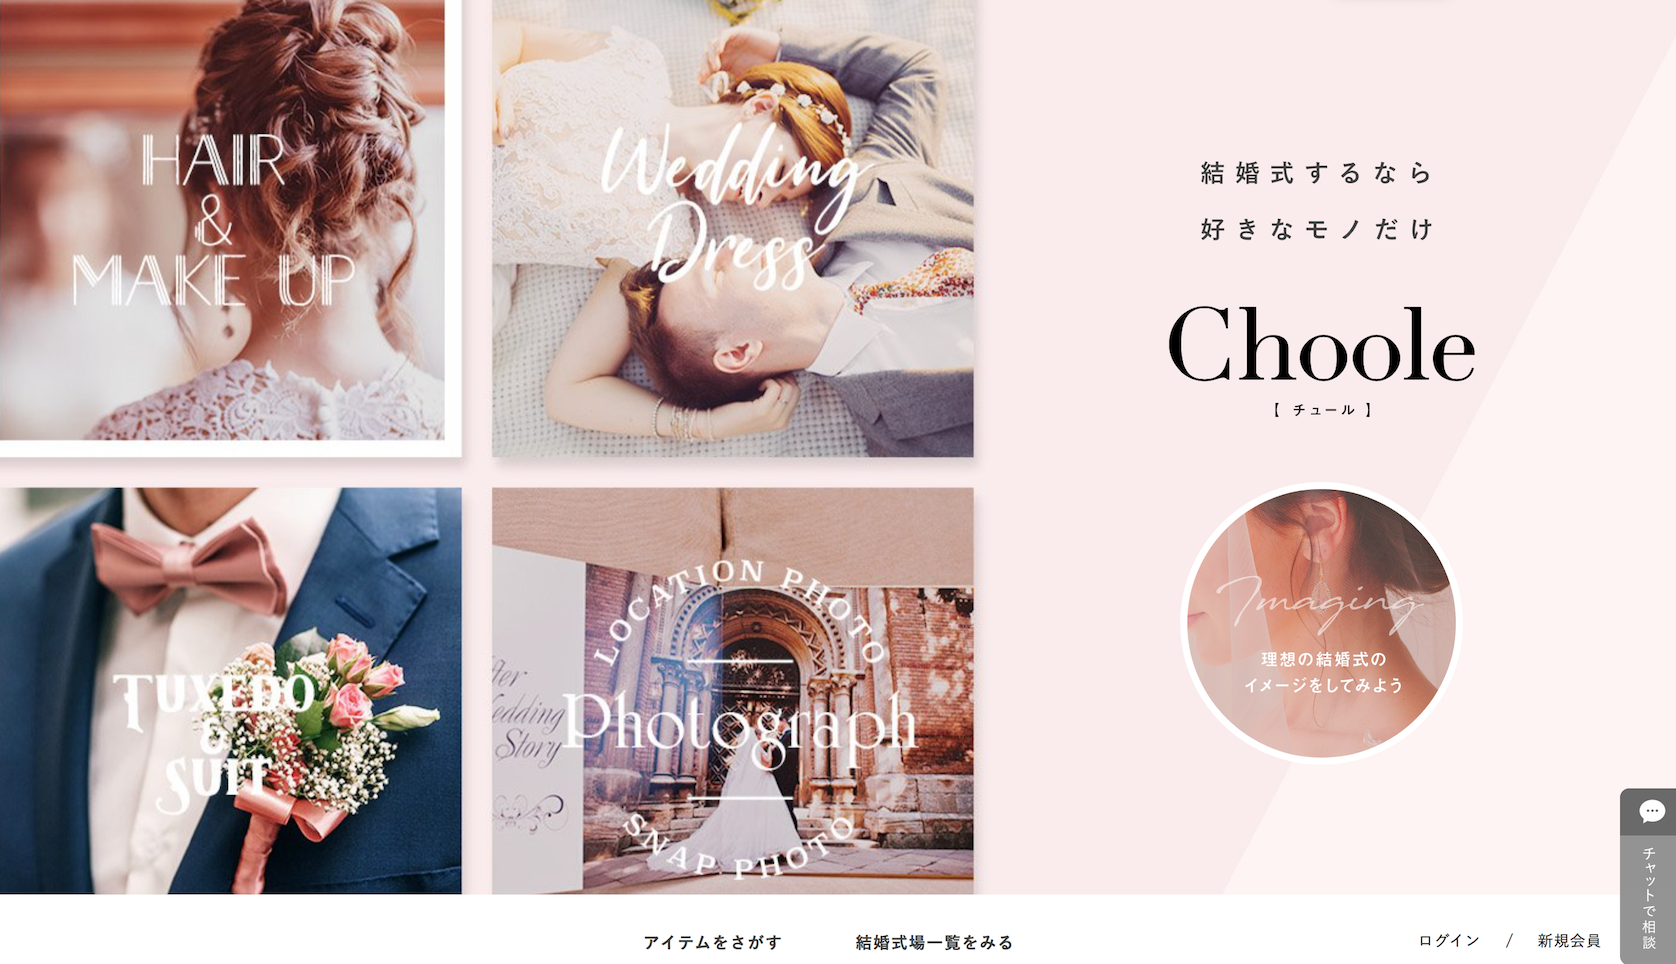 满足客户个性化需求 日本婚庆公司REXIT 首推线上婚庆策划平台Choole